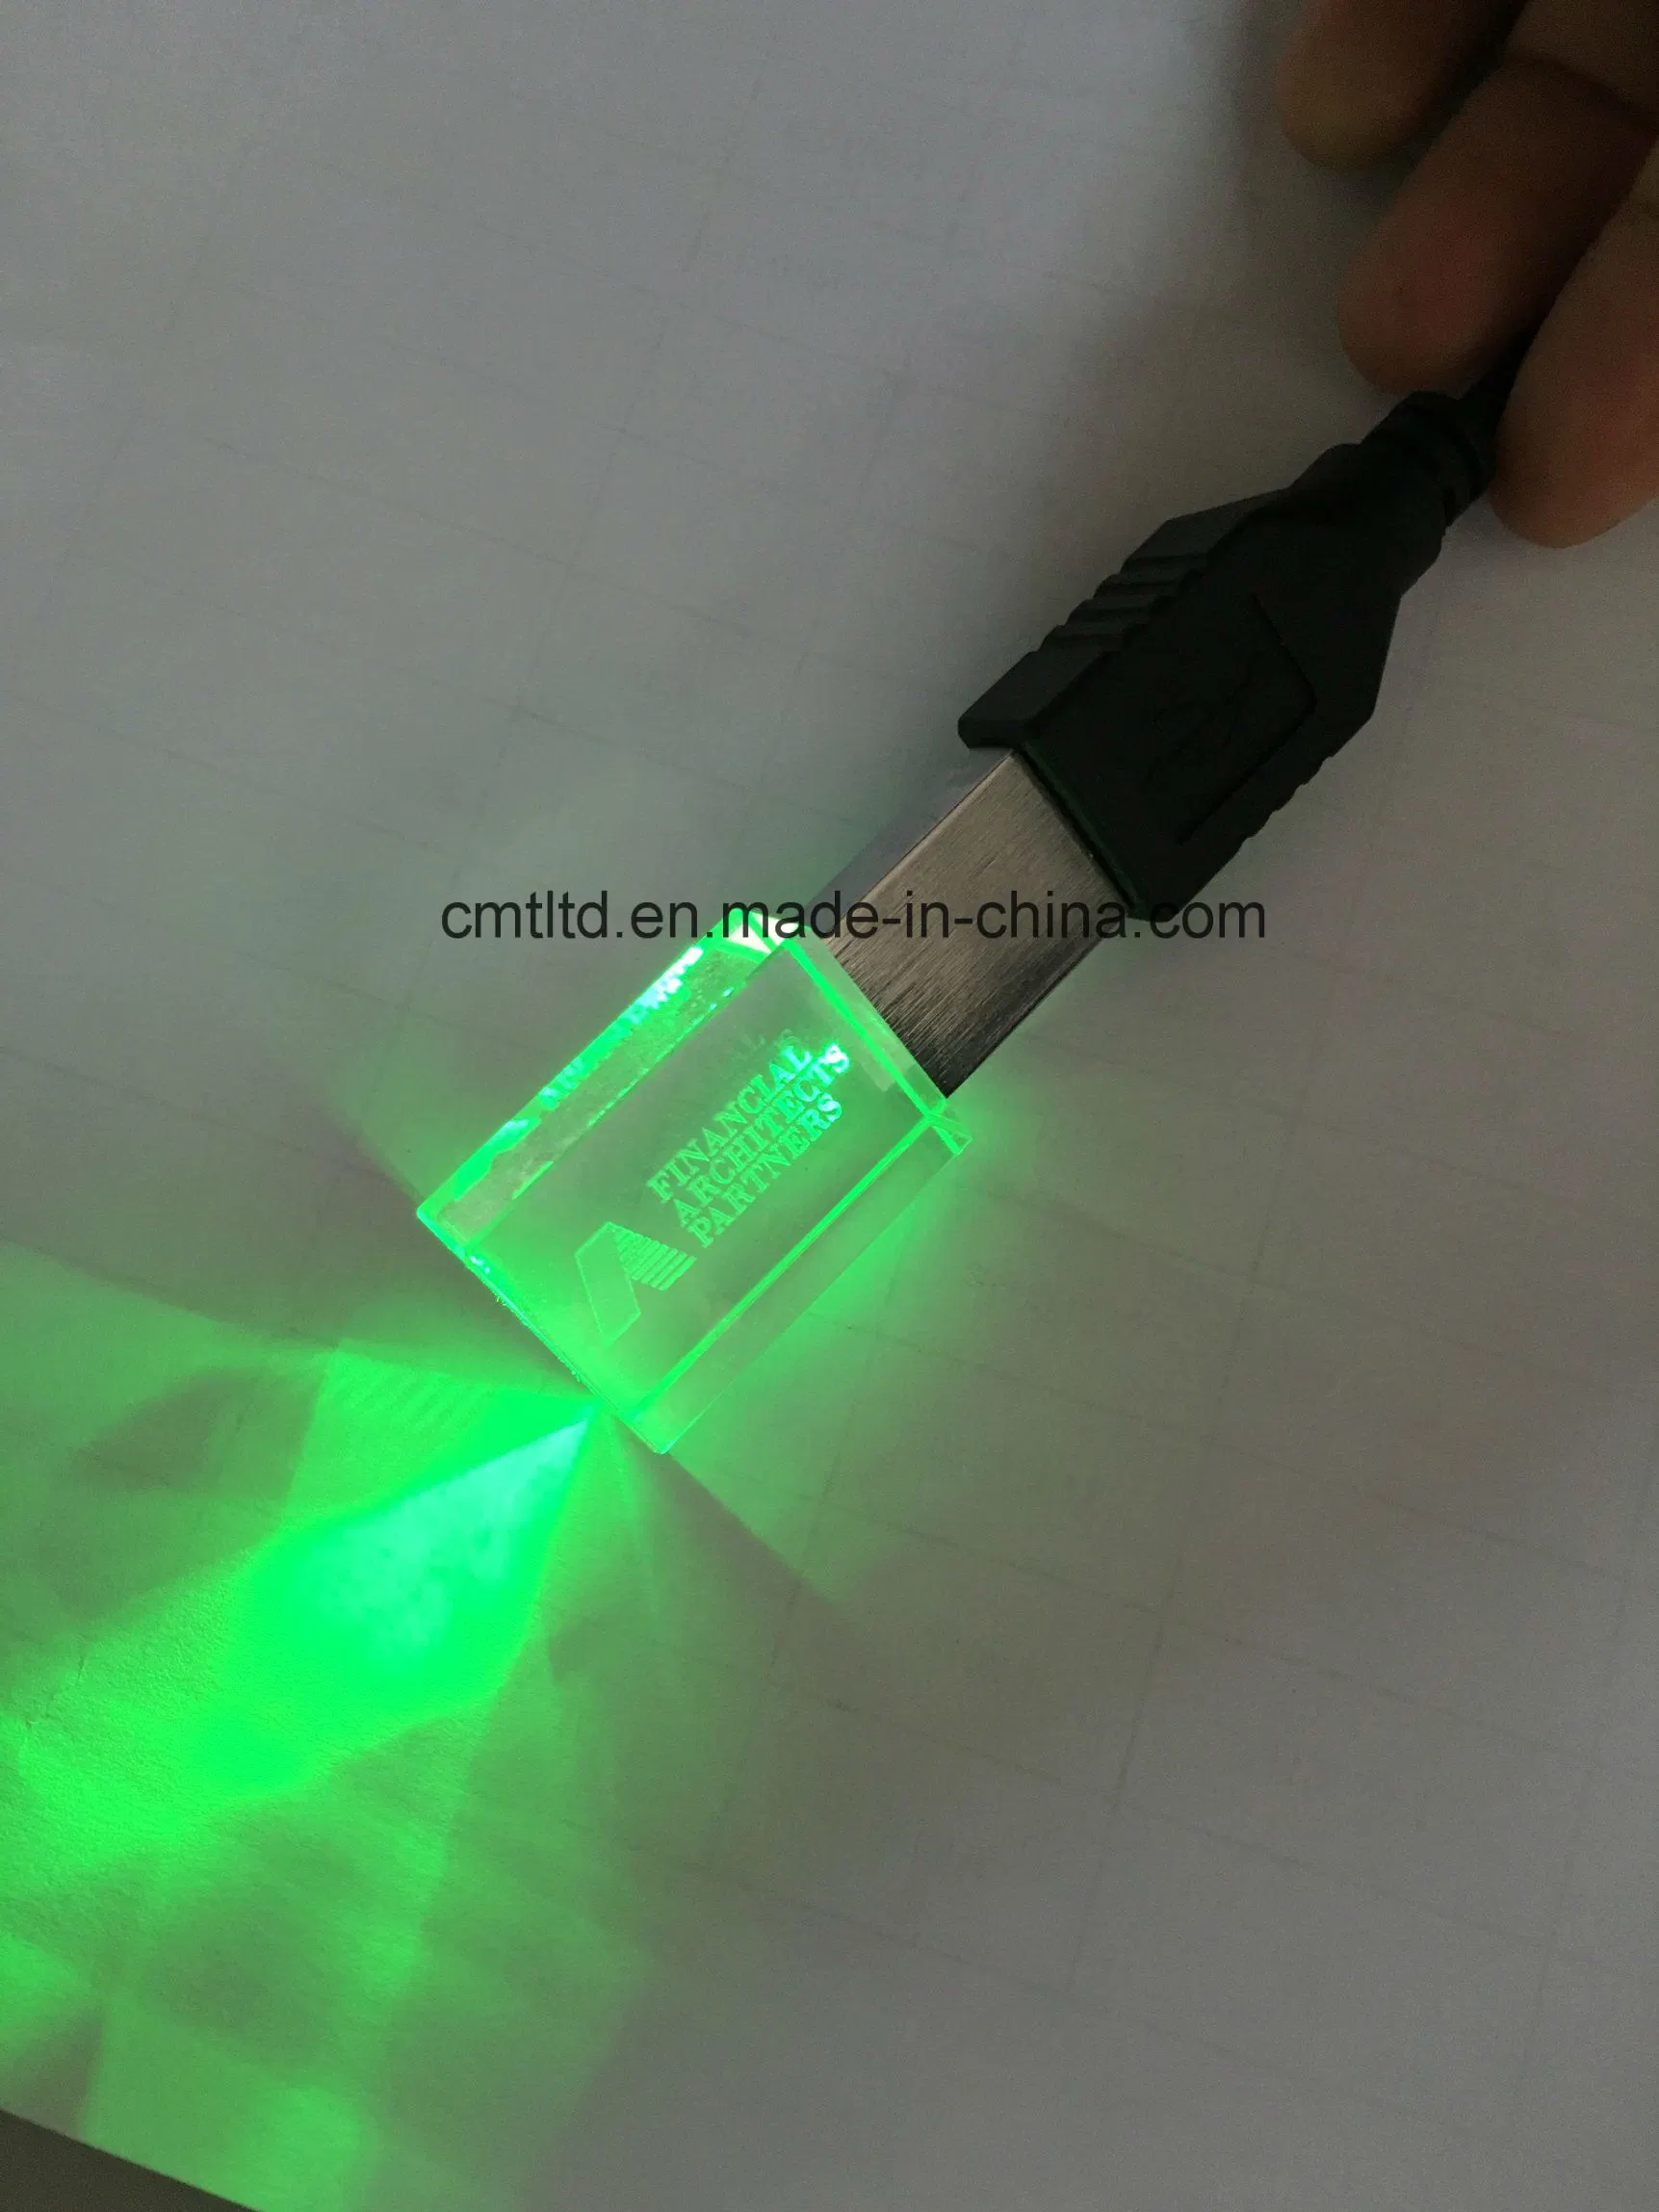 LED-Licht im Crystal USB-Flash-Laufwerk Werbeartikel Custom